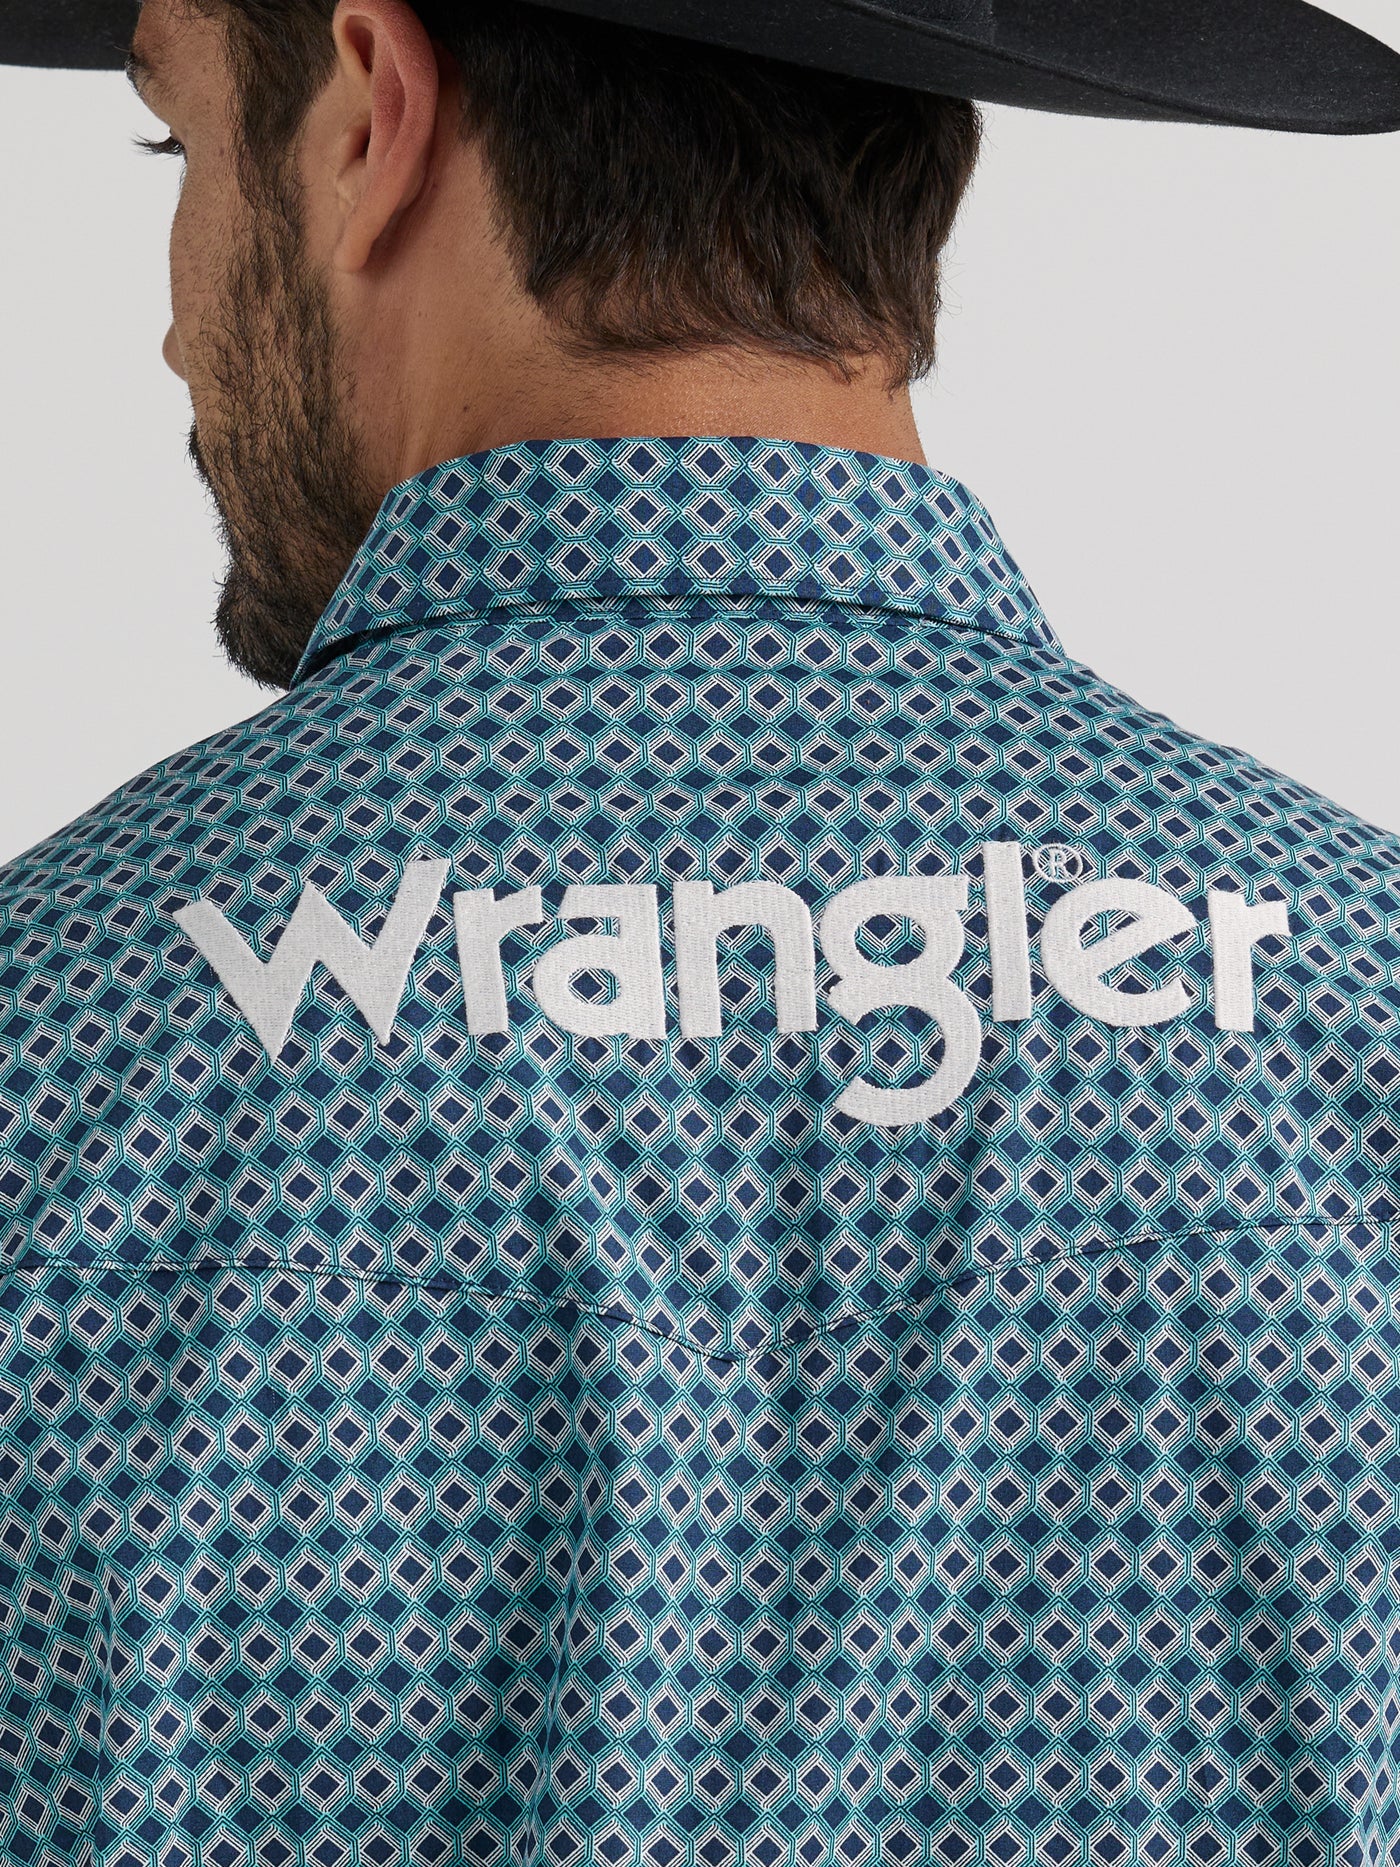 Wrangler Men's Logo Long Sleeve Button Down Shirt